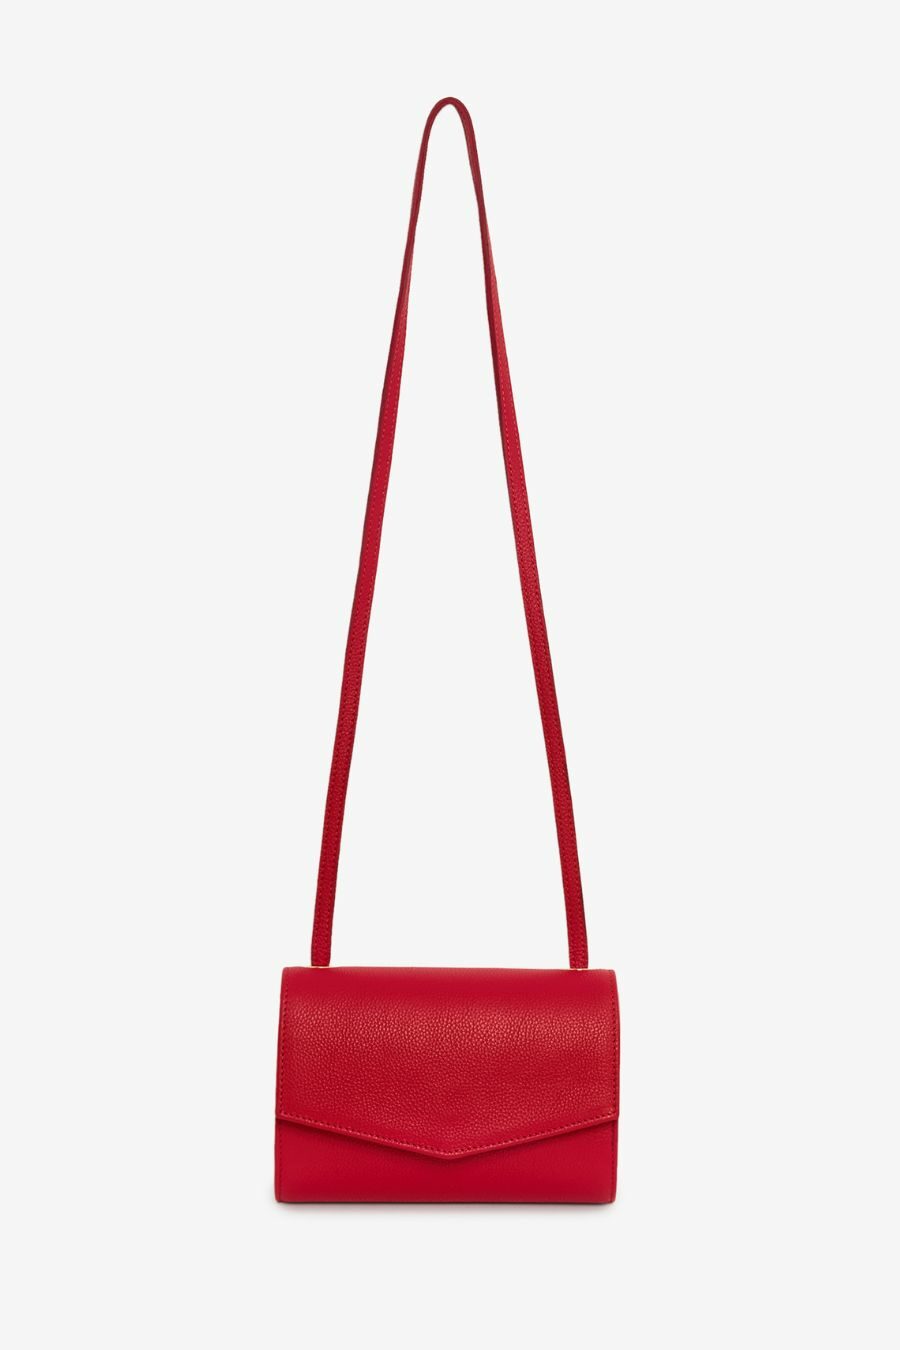 Rita Row - Otti Mini Bag - Red 2